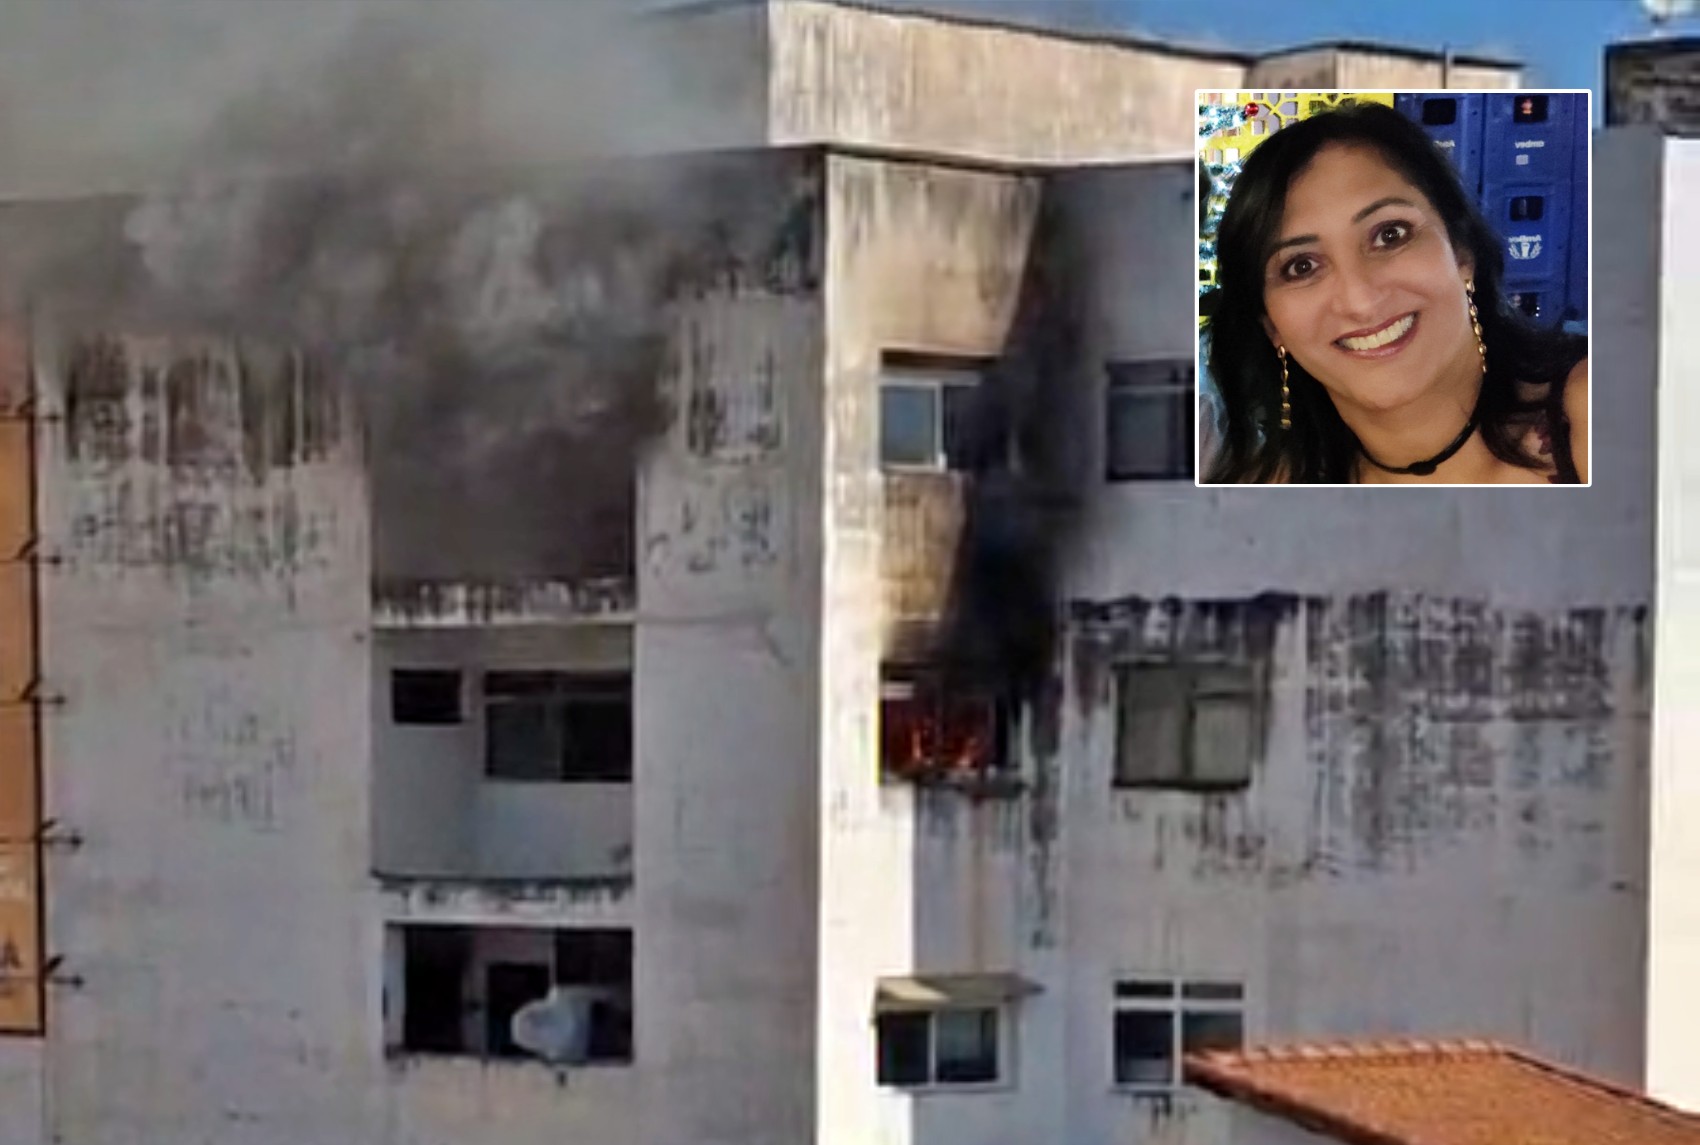 Polícia Civil investiga morte de psicóloga carbonizada durante incêndio em apartamento, em Itajubá, MG